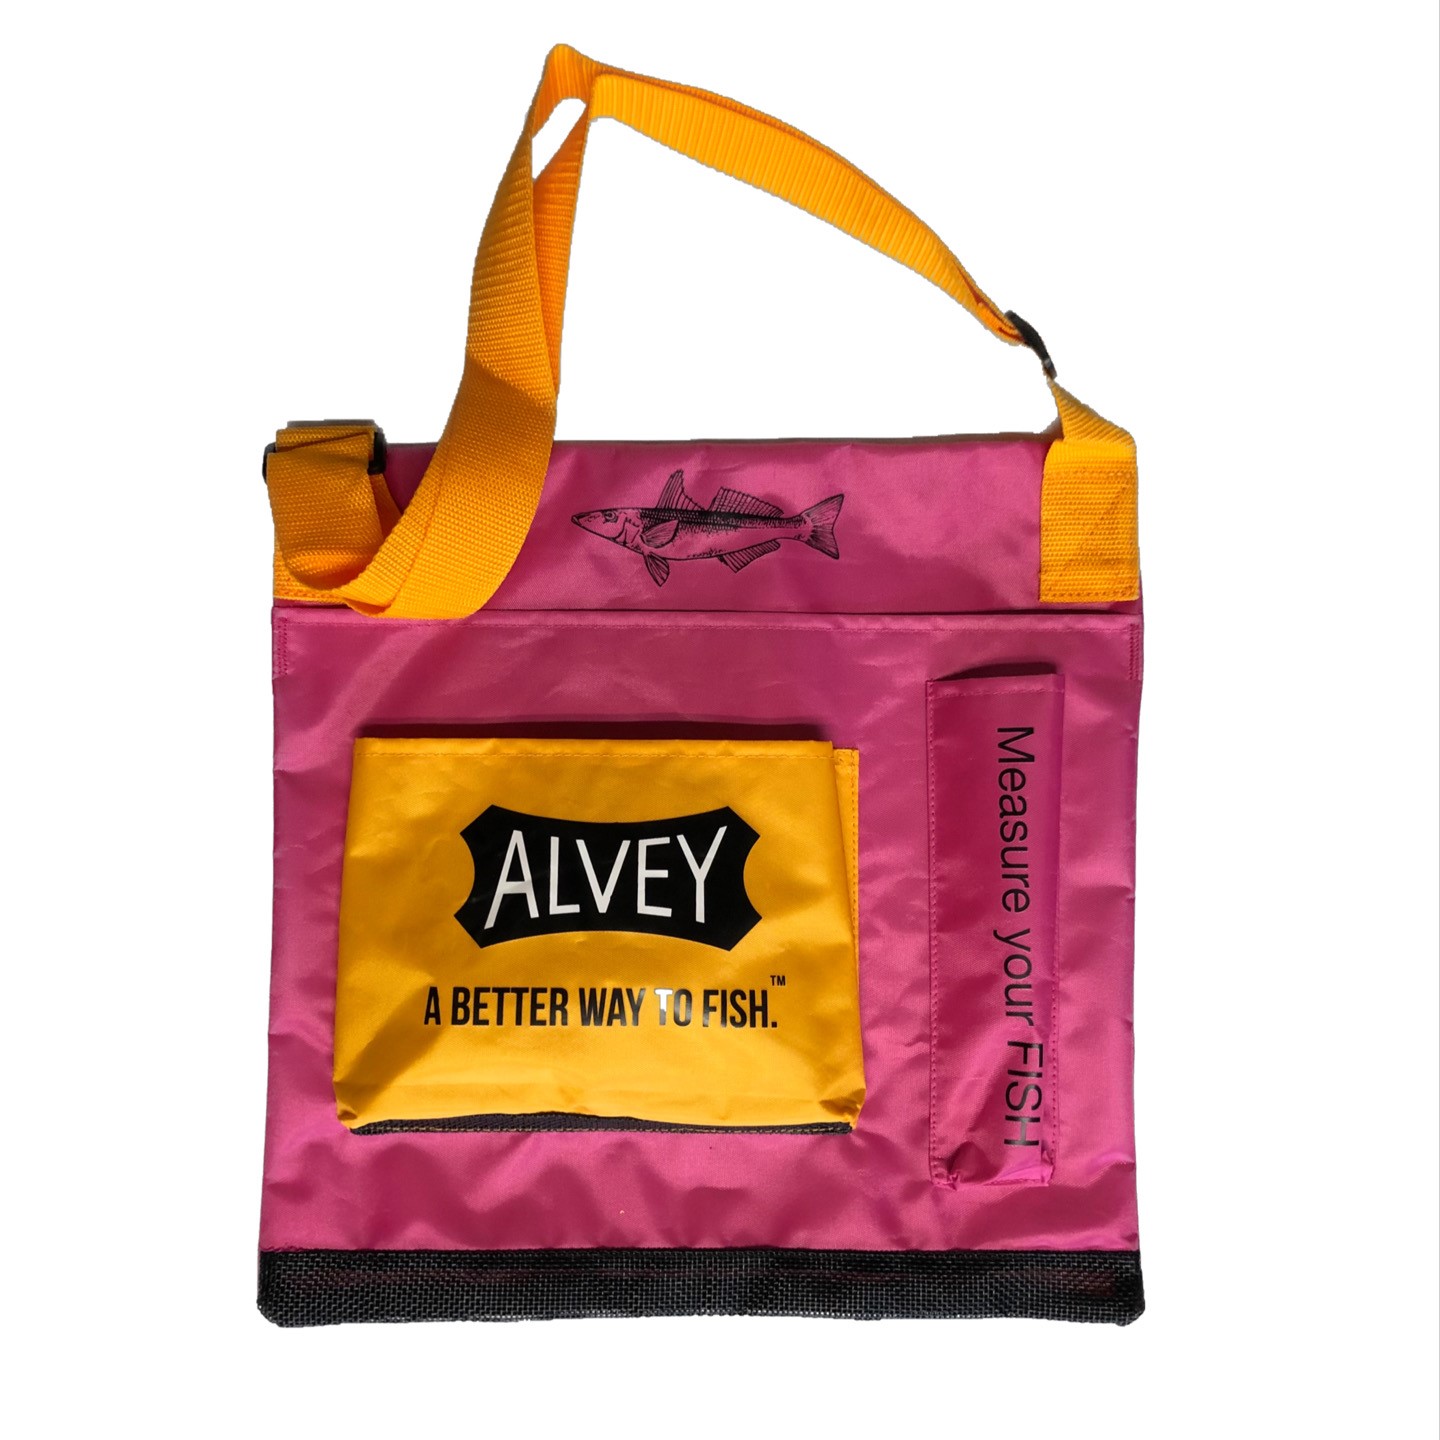 Alvey Junior Angler Wading Bag - PinkGold